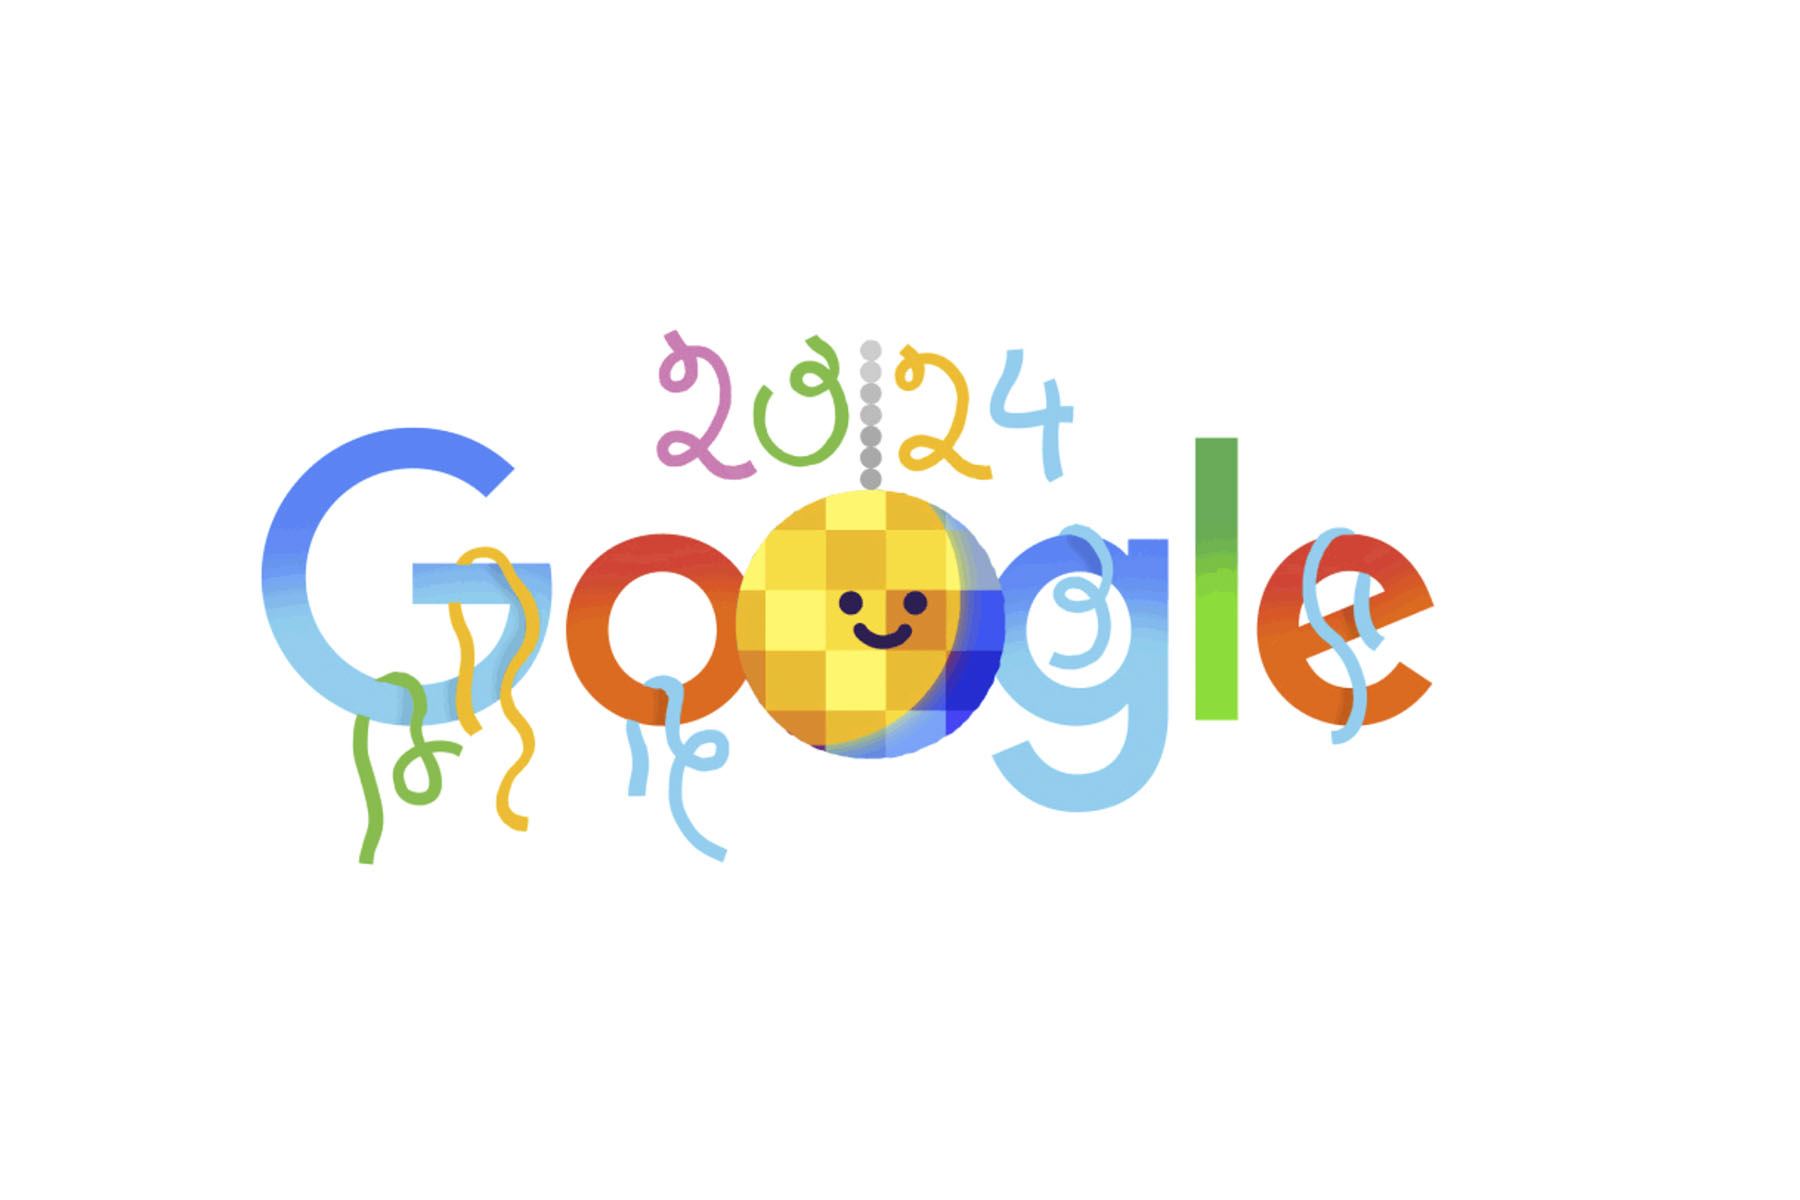 Como cada año, Google estrenó un nuevo doodle con motivo del Año Nuevo.